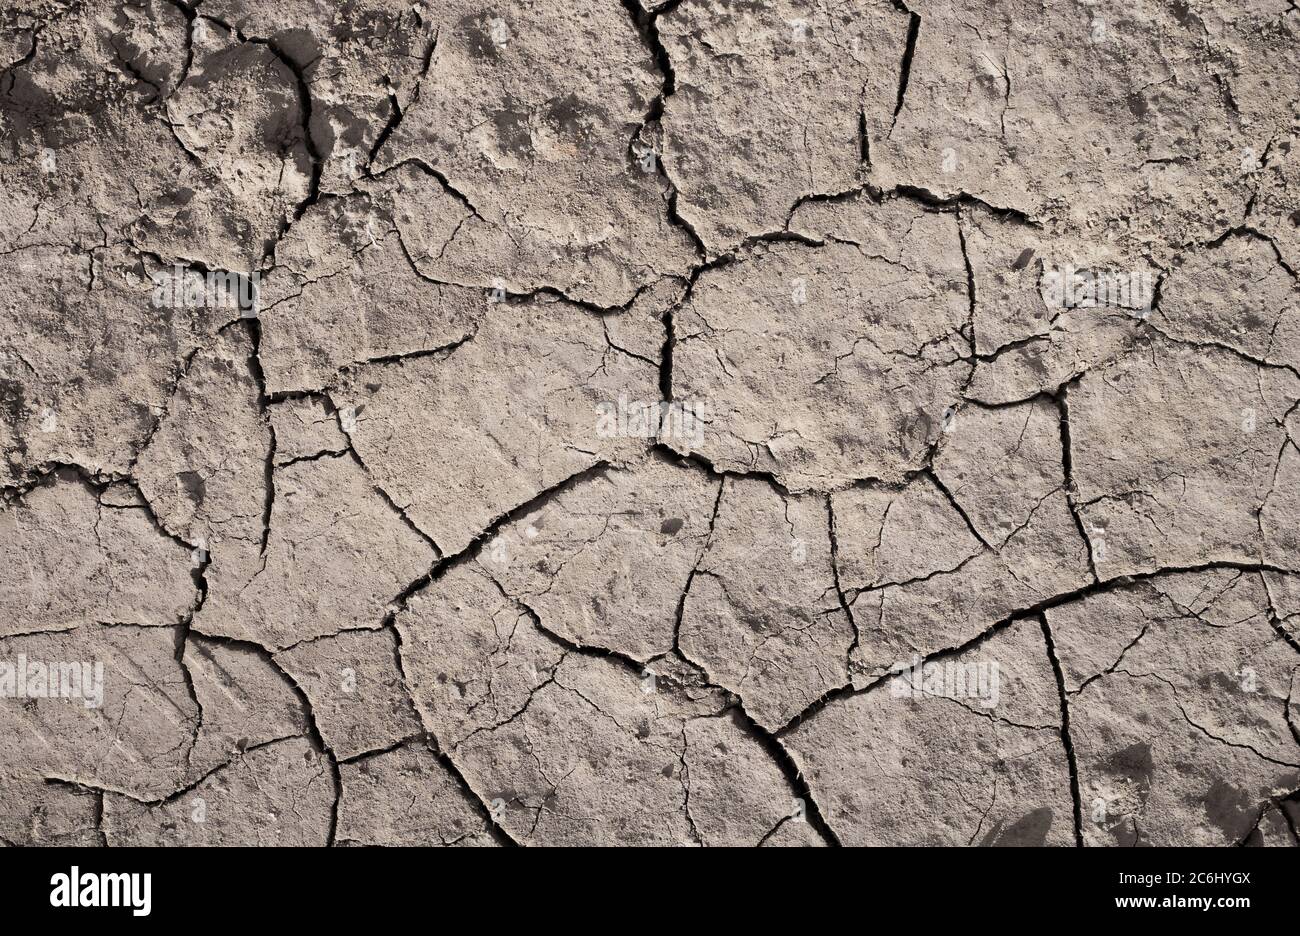 Trockenheit des trockenen Landes. Umweltproblem der Trockenheit und Dürre, die zu negativer Wüstenbildung führen. Der Boden ist geknackt und versengt Stockfoto